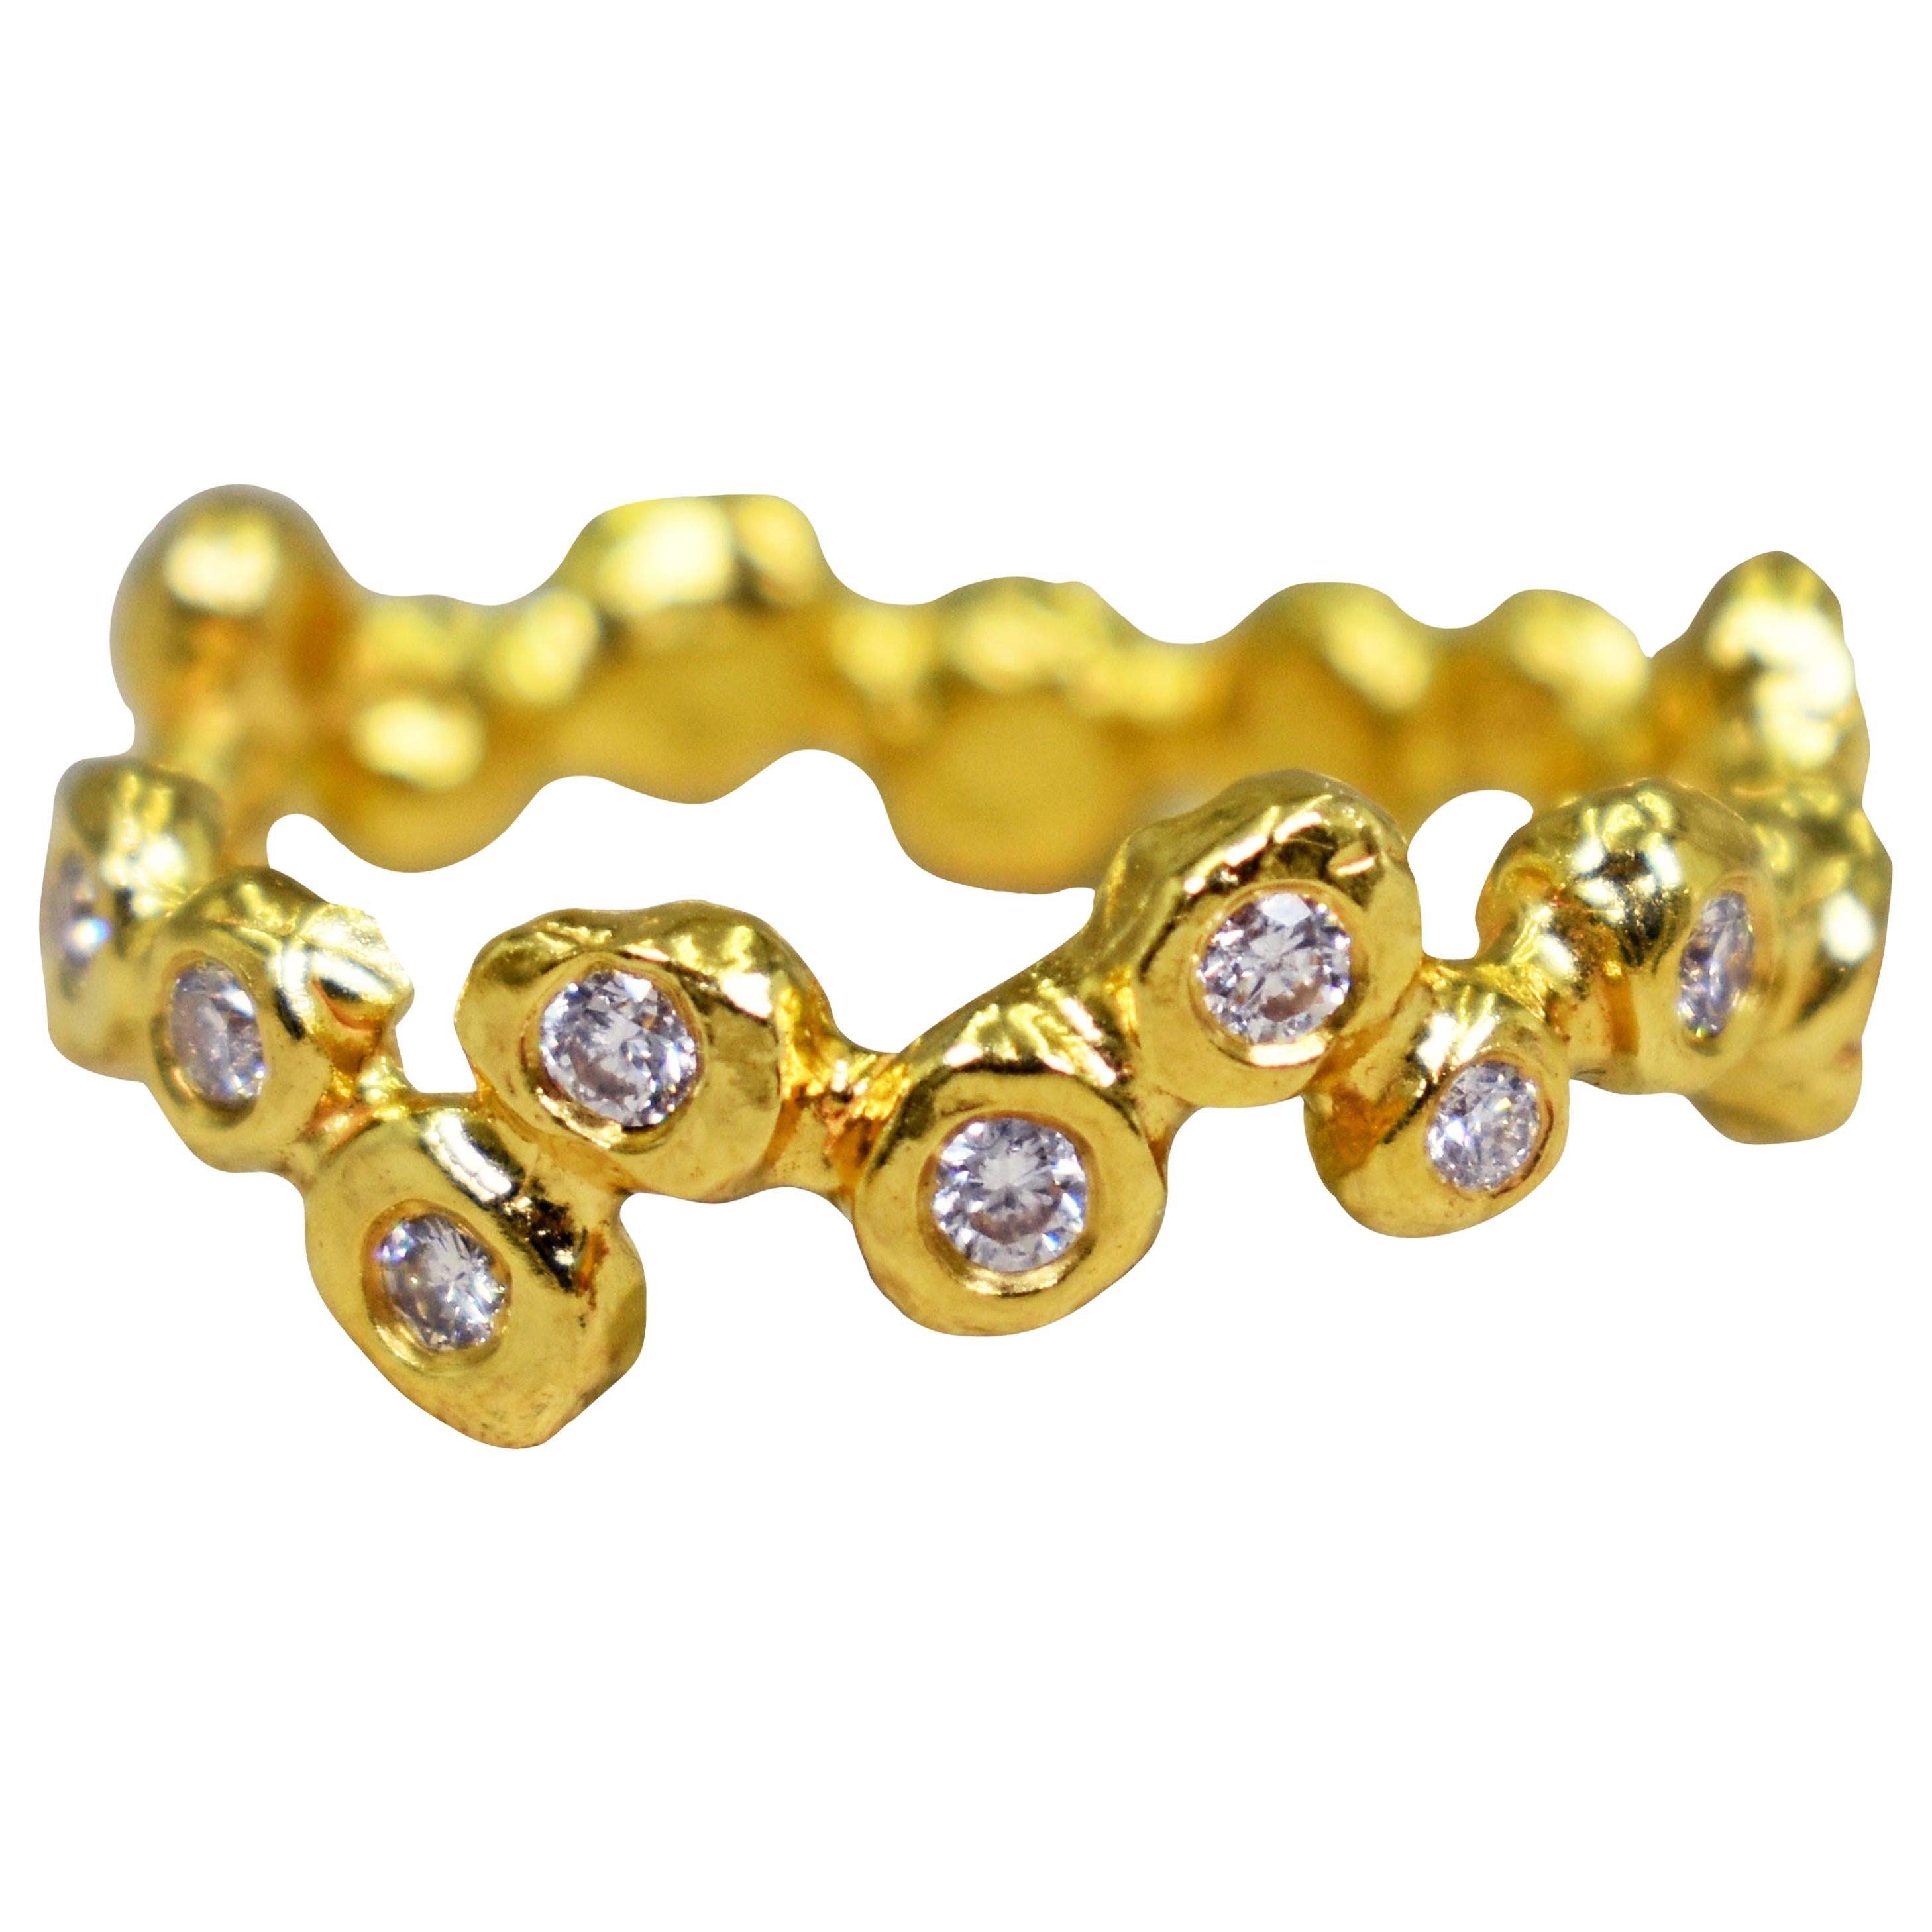 Großer Blasendiamant-Ring aus 22 Karat Gold